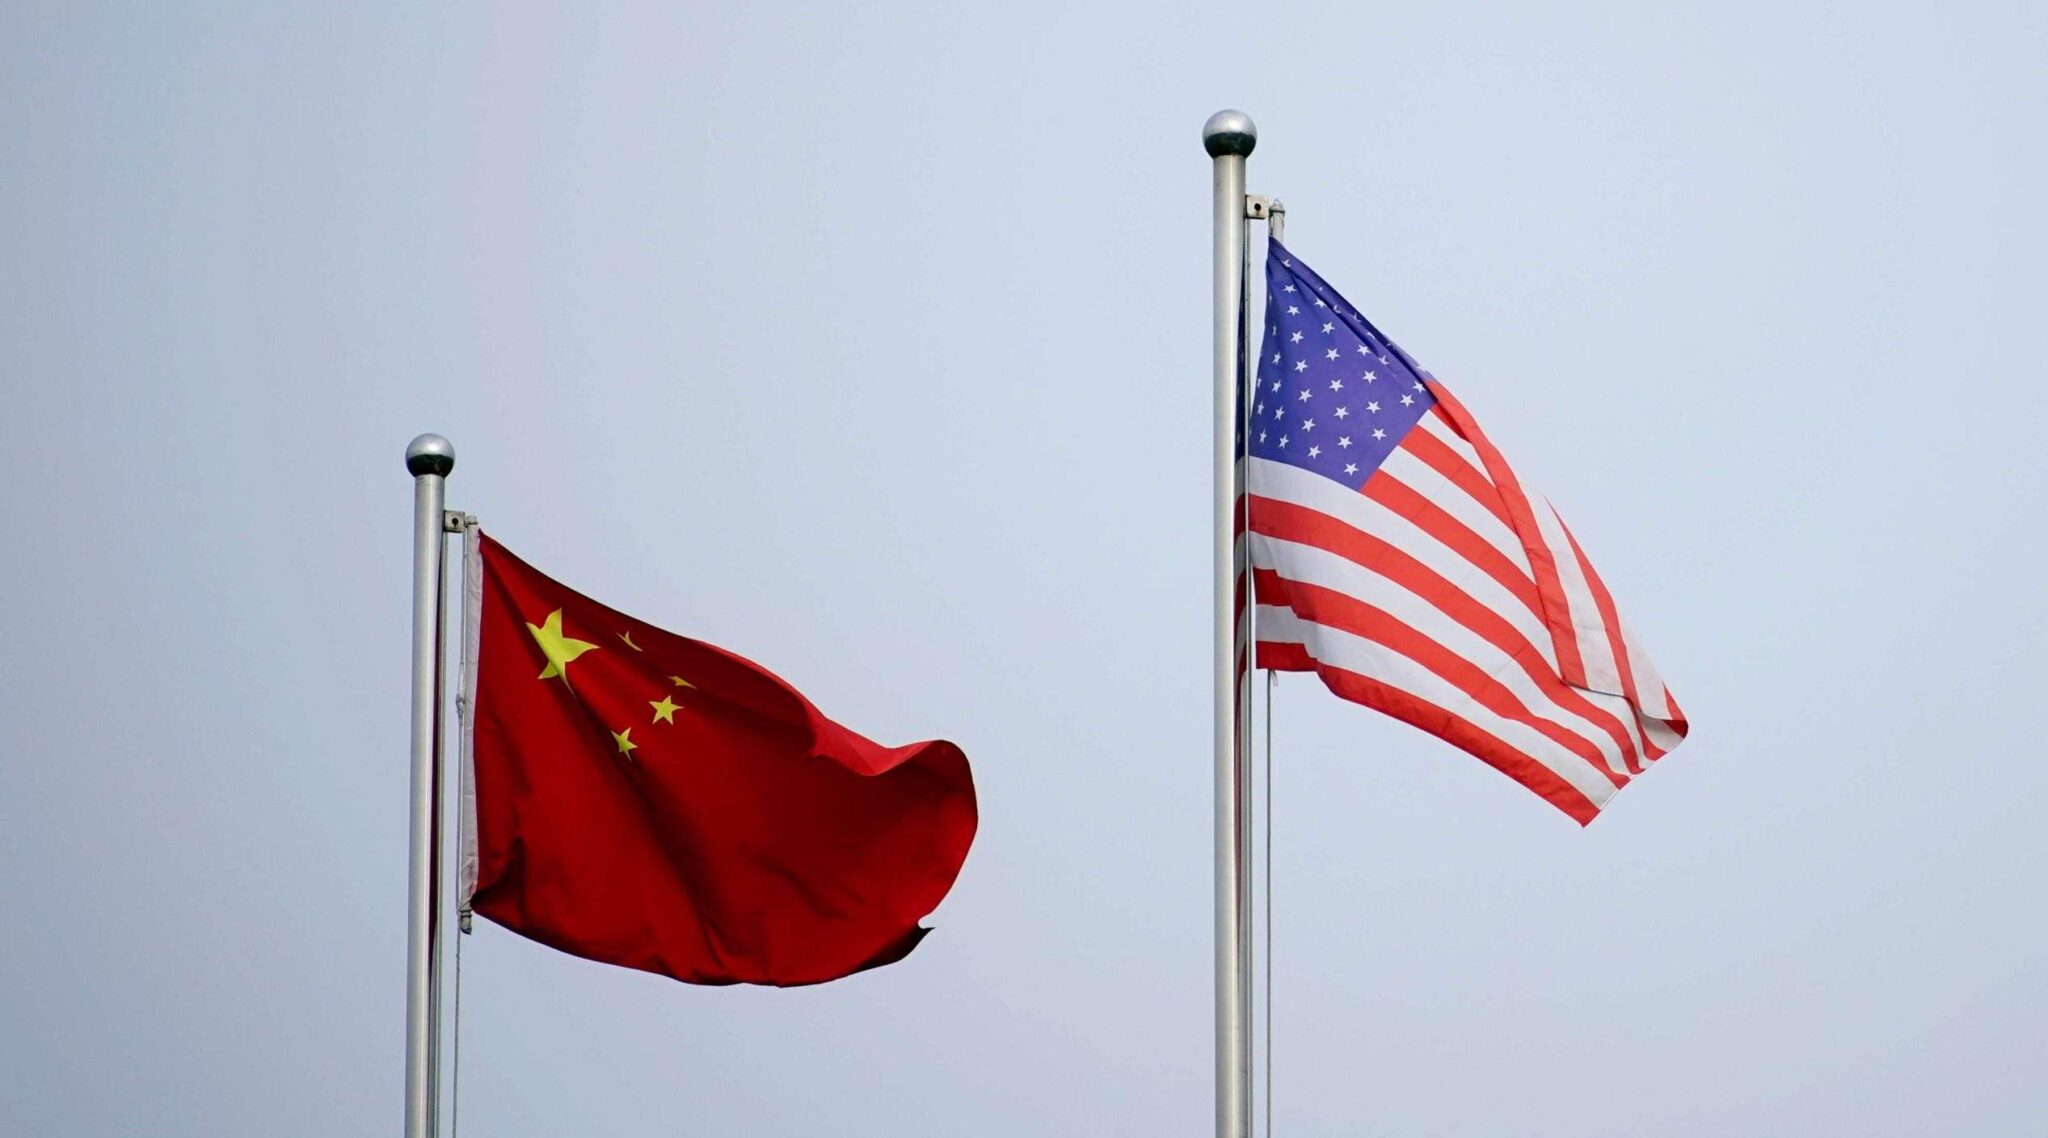 الصين: "تداعيات خطيرة جداً" للمشروع الأمريكي بشأن تايوان